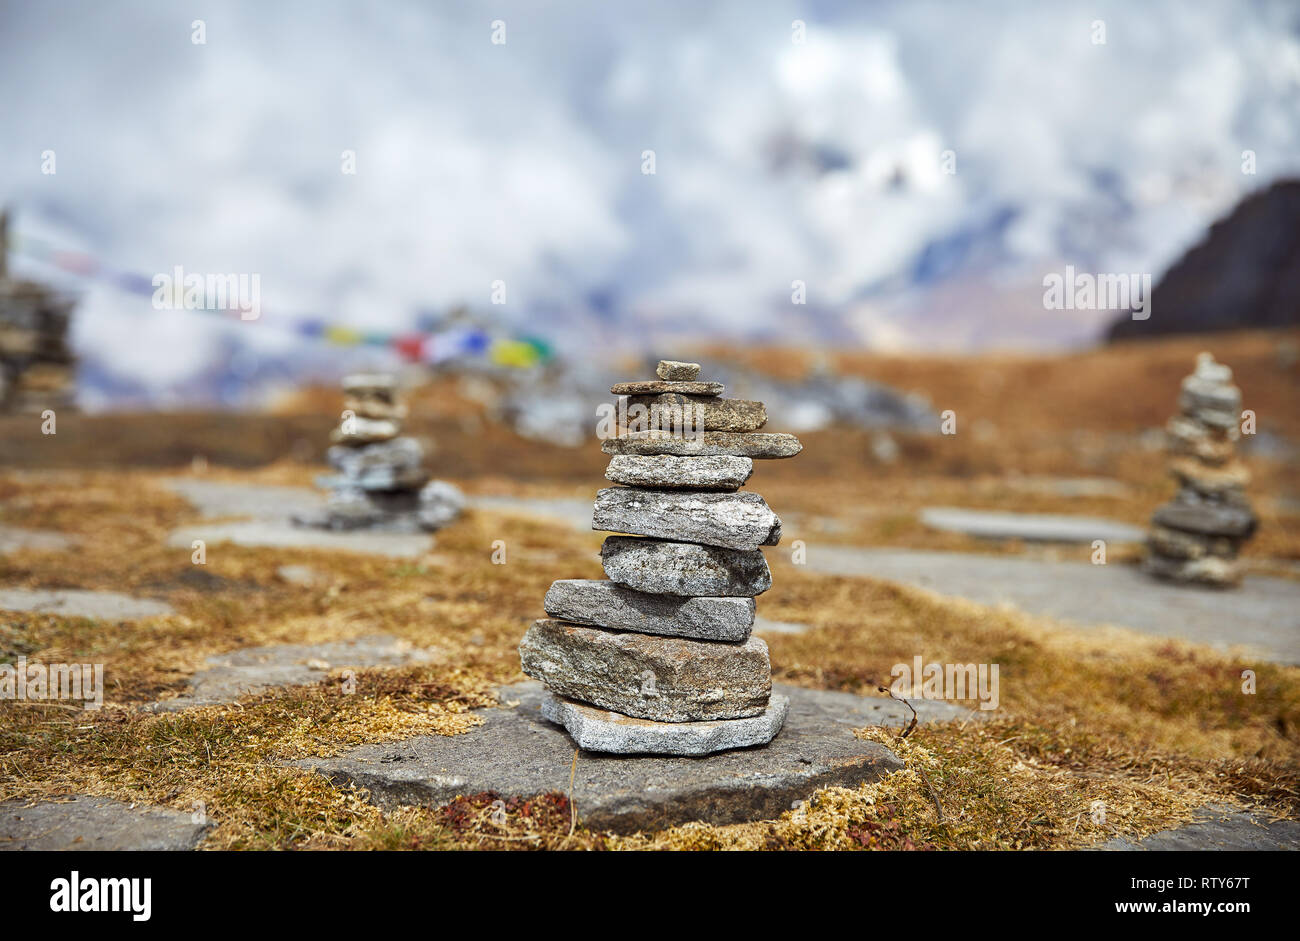 Tas de pierres et de drapeaux de prière Tibetains Lung Ta au camp de base à l'Himal Mardi Nuageux sommets de montagnes de l'Himalaya au Népal Banque D'Images